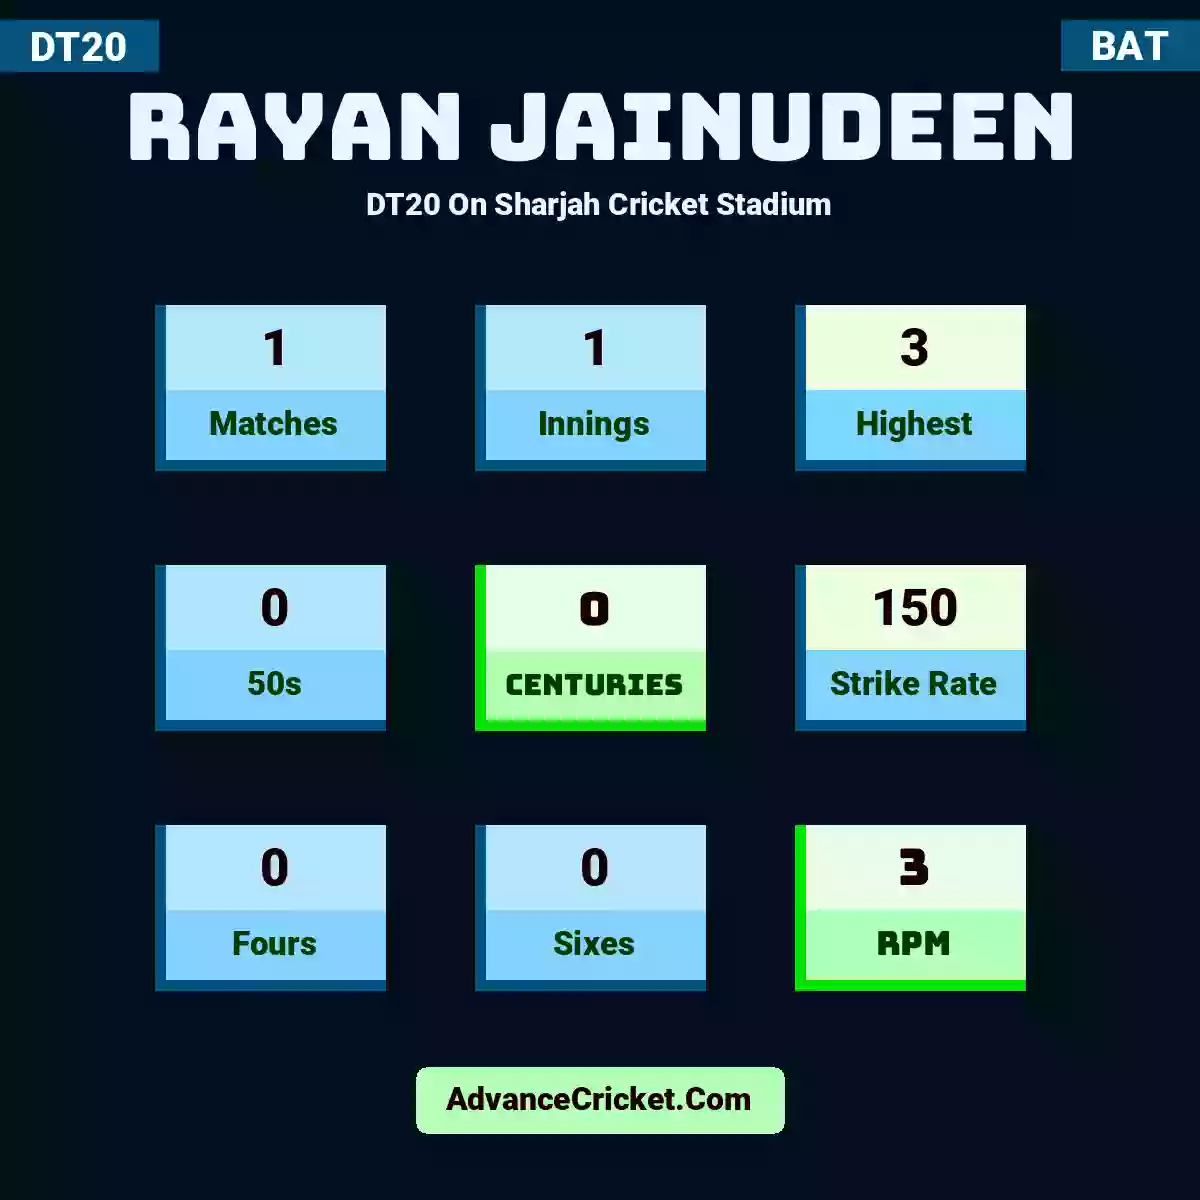 Rayan Jainudeen DT20  On Sharjah Cricket Stadium, Rayan Jainudeen played 1 matches, scored 3 runs as highest, 0 half-centuries, and 0 centuries, with a strike rate of 150. R.Jainudeen hit 0 fours and 0 sixes, with an RPM of 3.